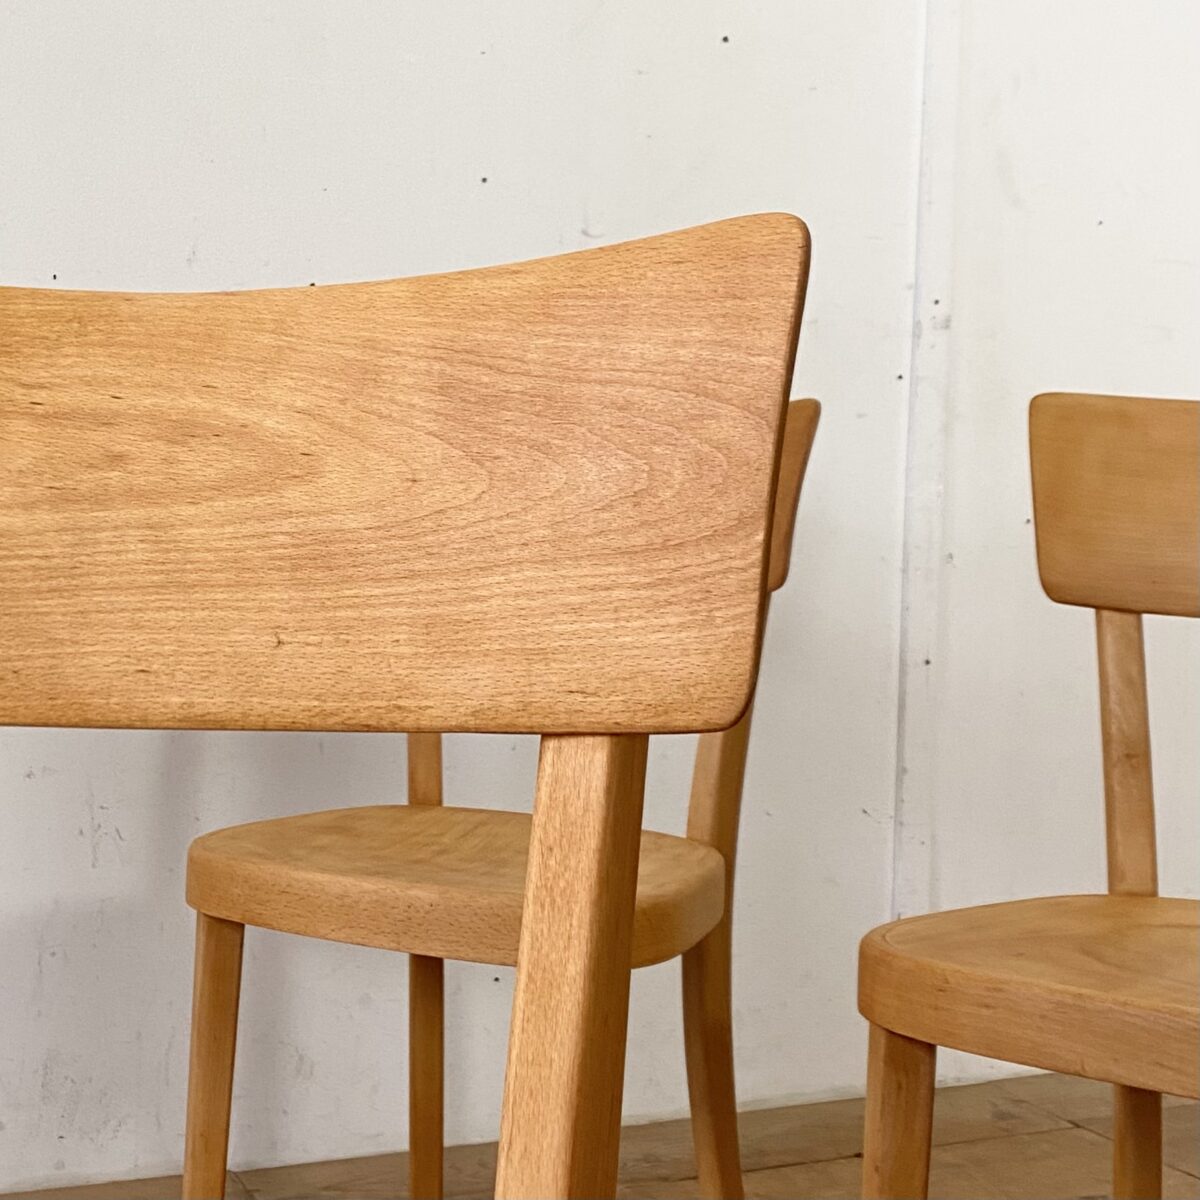 Deuxieme.shop Beizenstühle von horgenglarus. Preis pro Stuhl. Die Stühle sind in stabilem restaurierten Zustand, die Holz Oberflächen sind geschliffen und mit Naturöl behandelt.